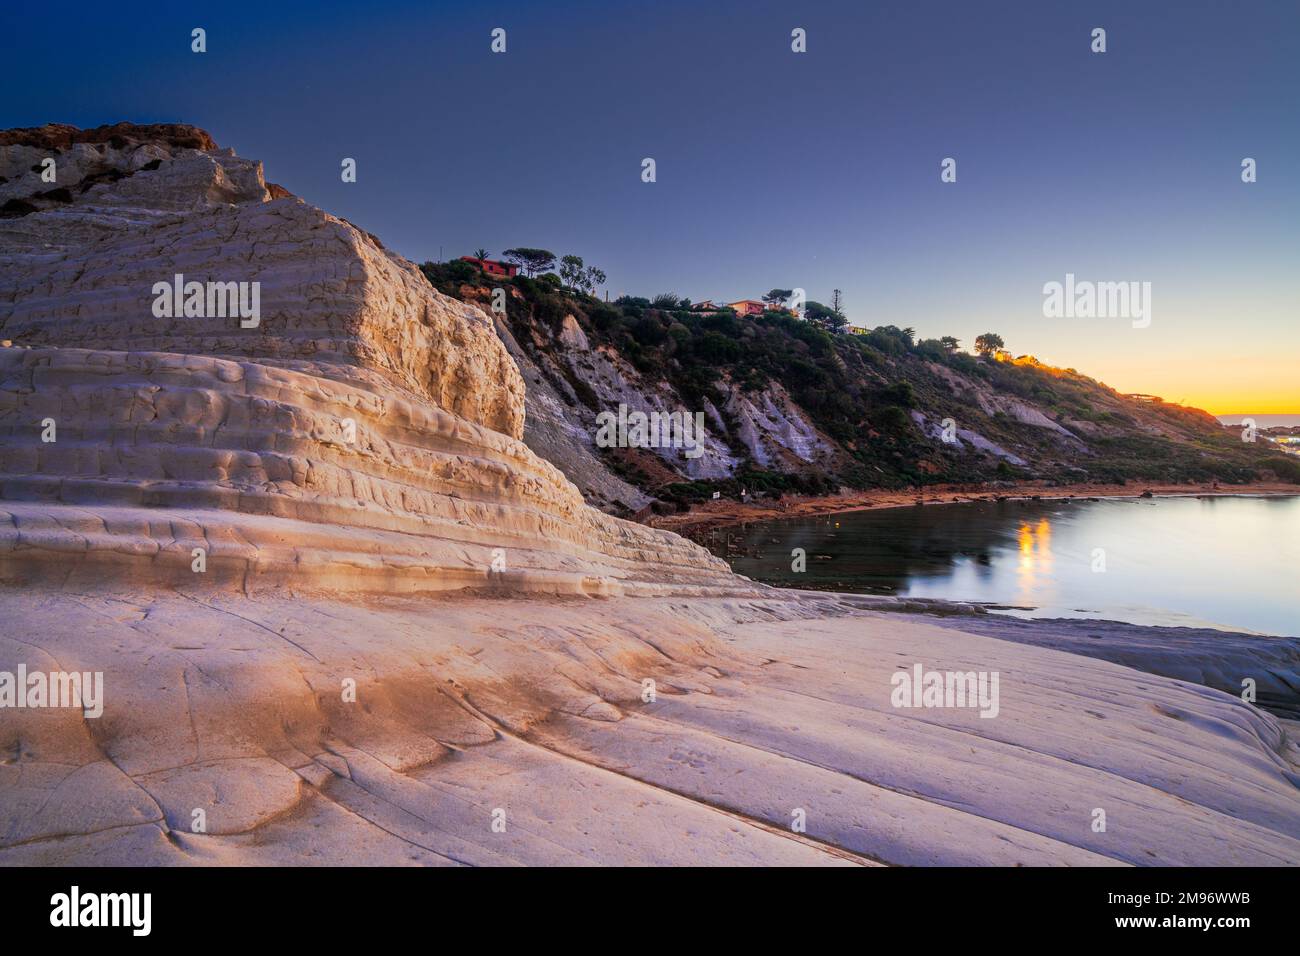 Acantilado rocoso de los escalones de los turcos en Agrigento, Sicilia, Italia al amanecer. Foto de stock